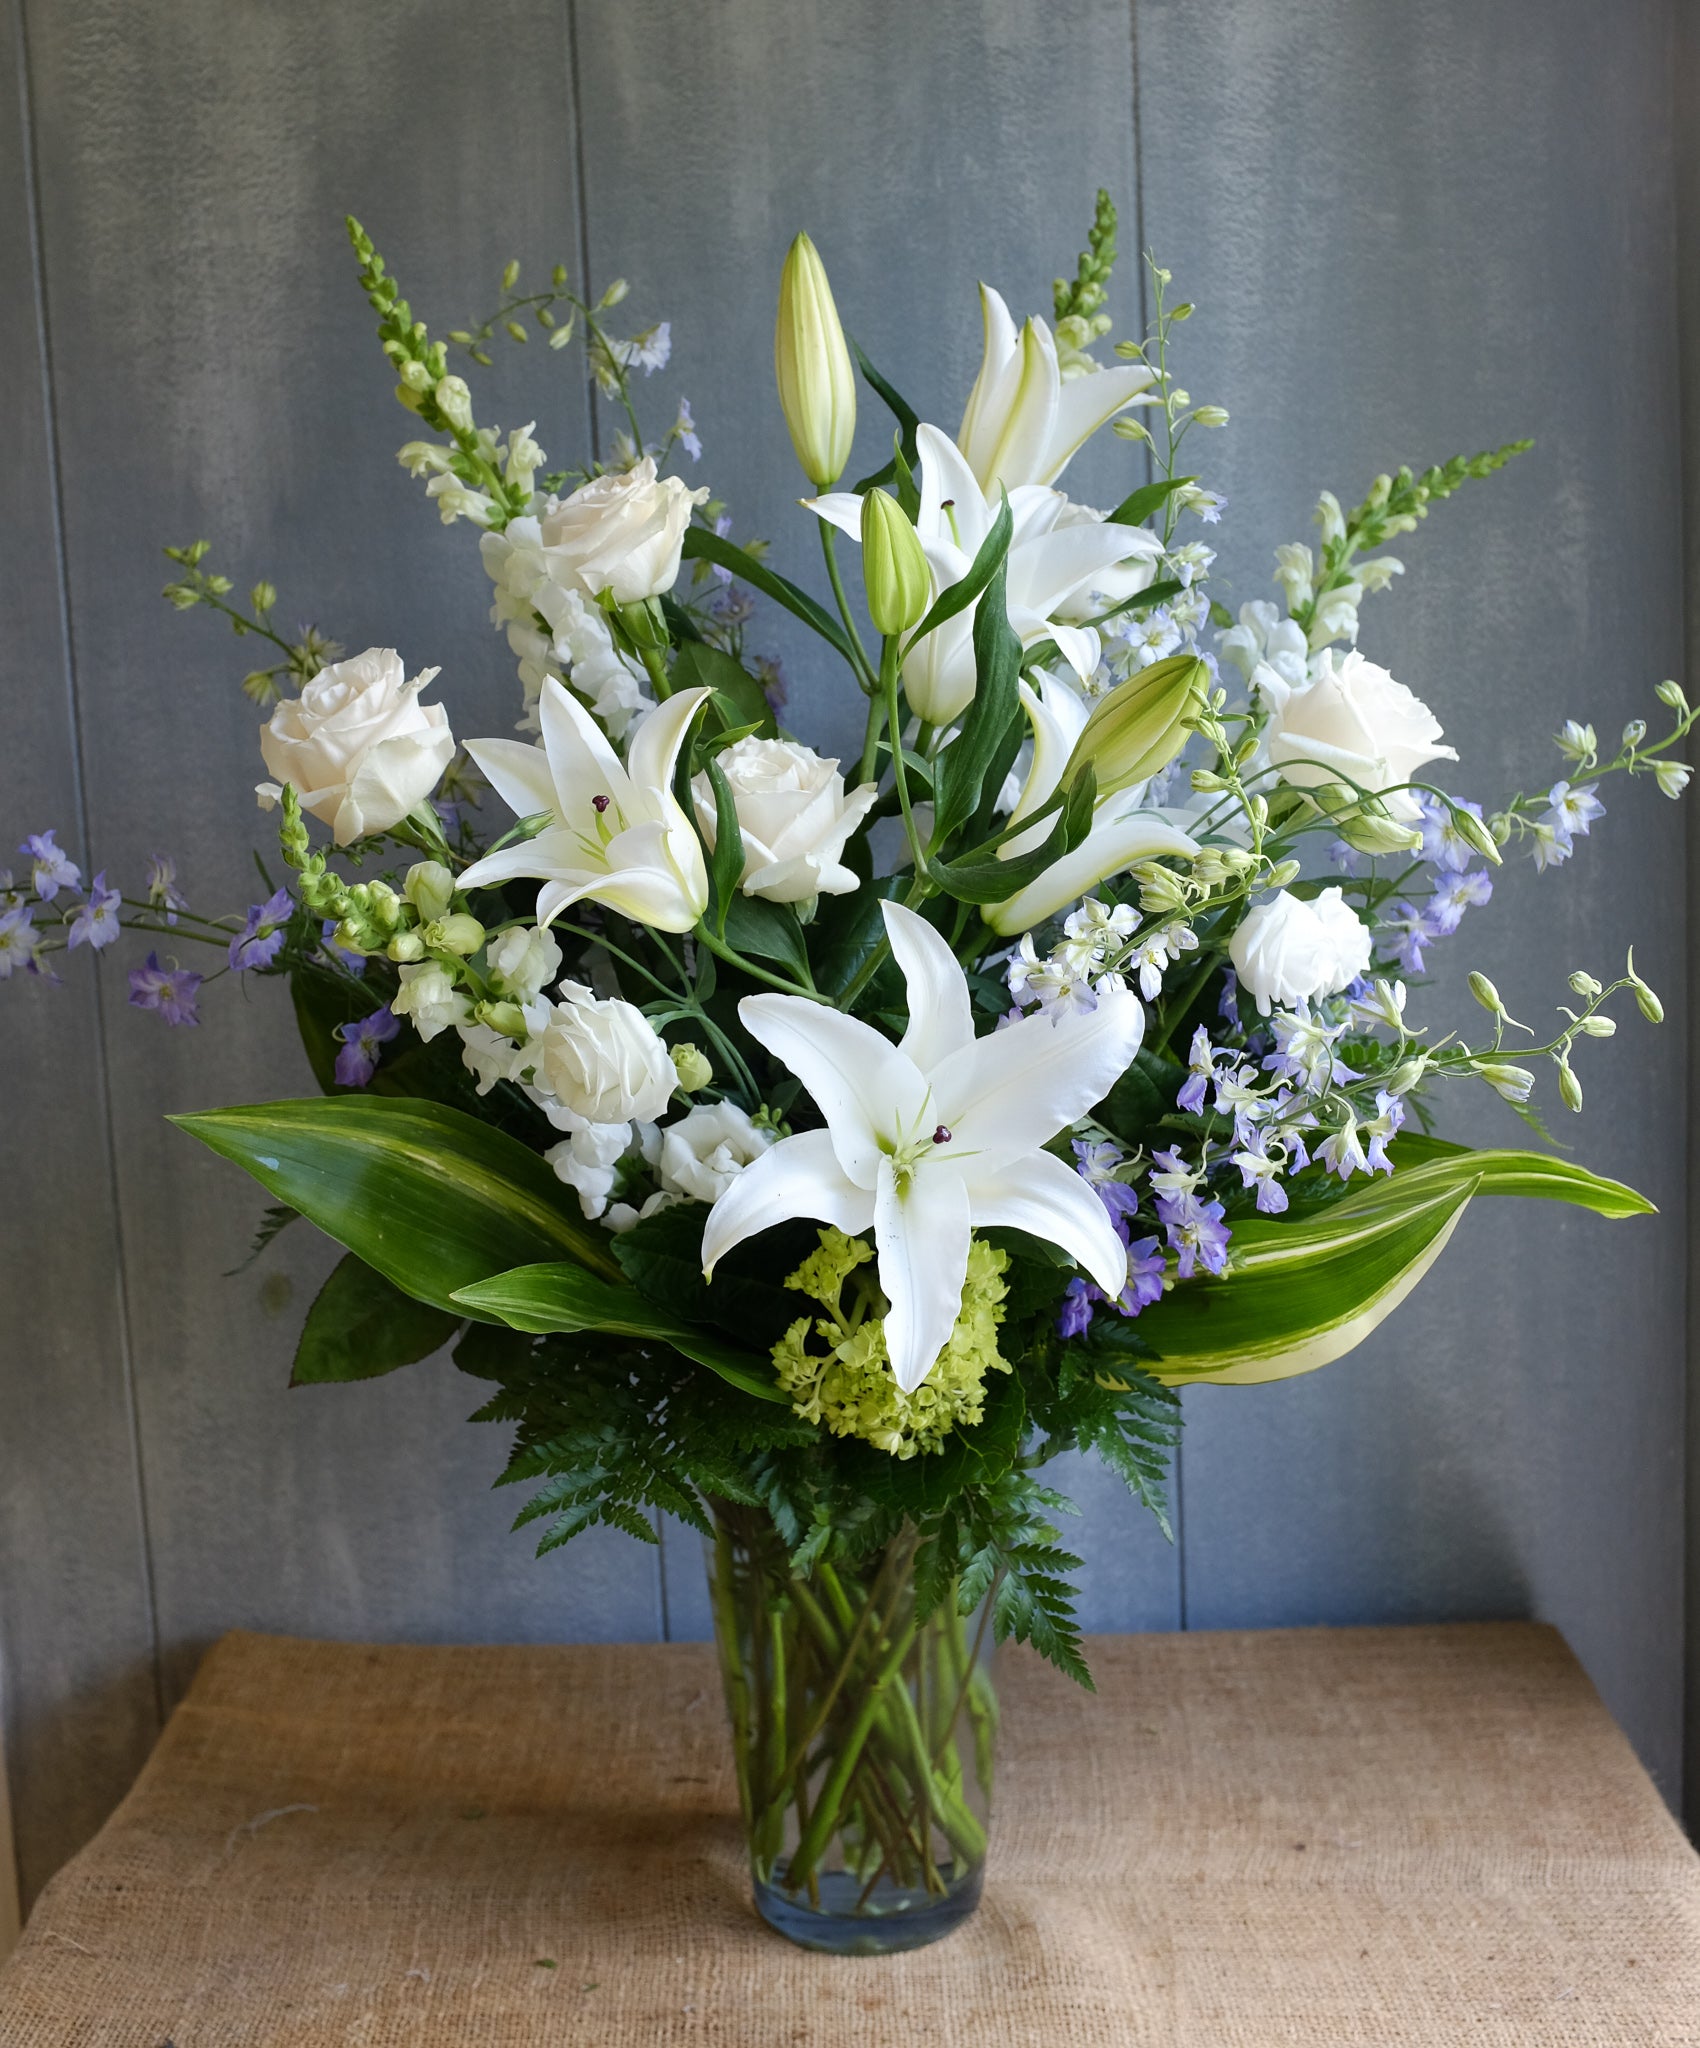 Floral Arrangement by Michler's Florist with lilies, delphinium, hydrangea, white roses